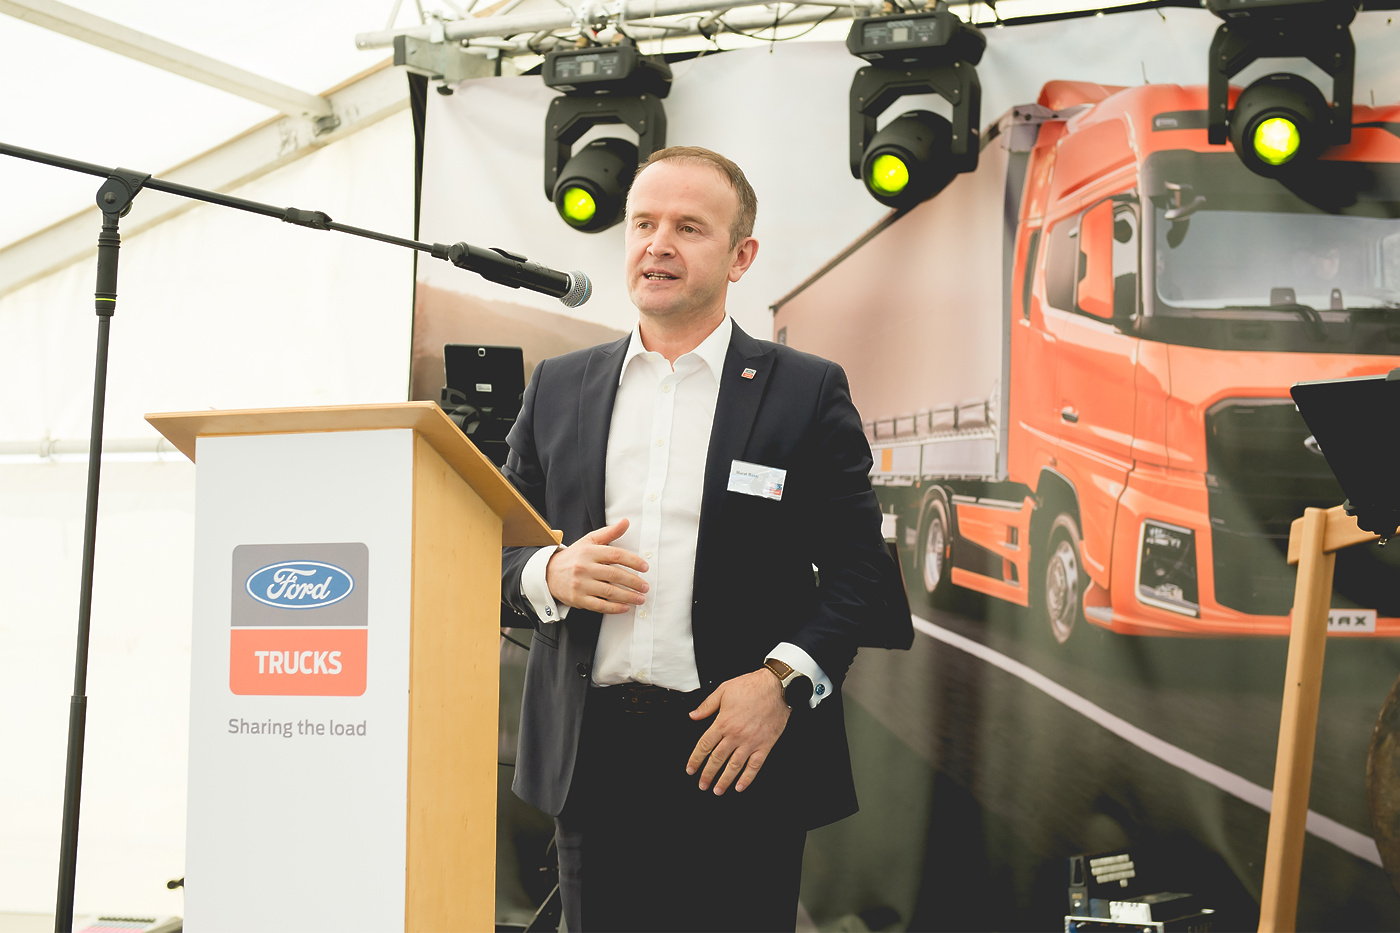 Uradno so obeležili začetek delovanja novega servisnega centra Ford Trucks v Mariboru